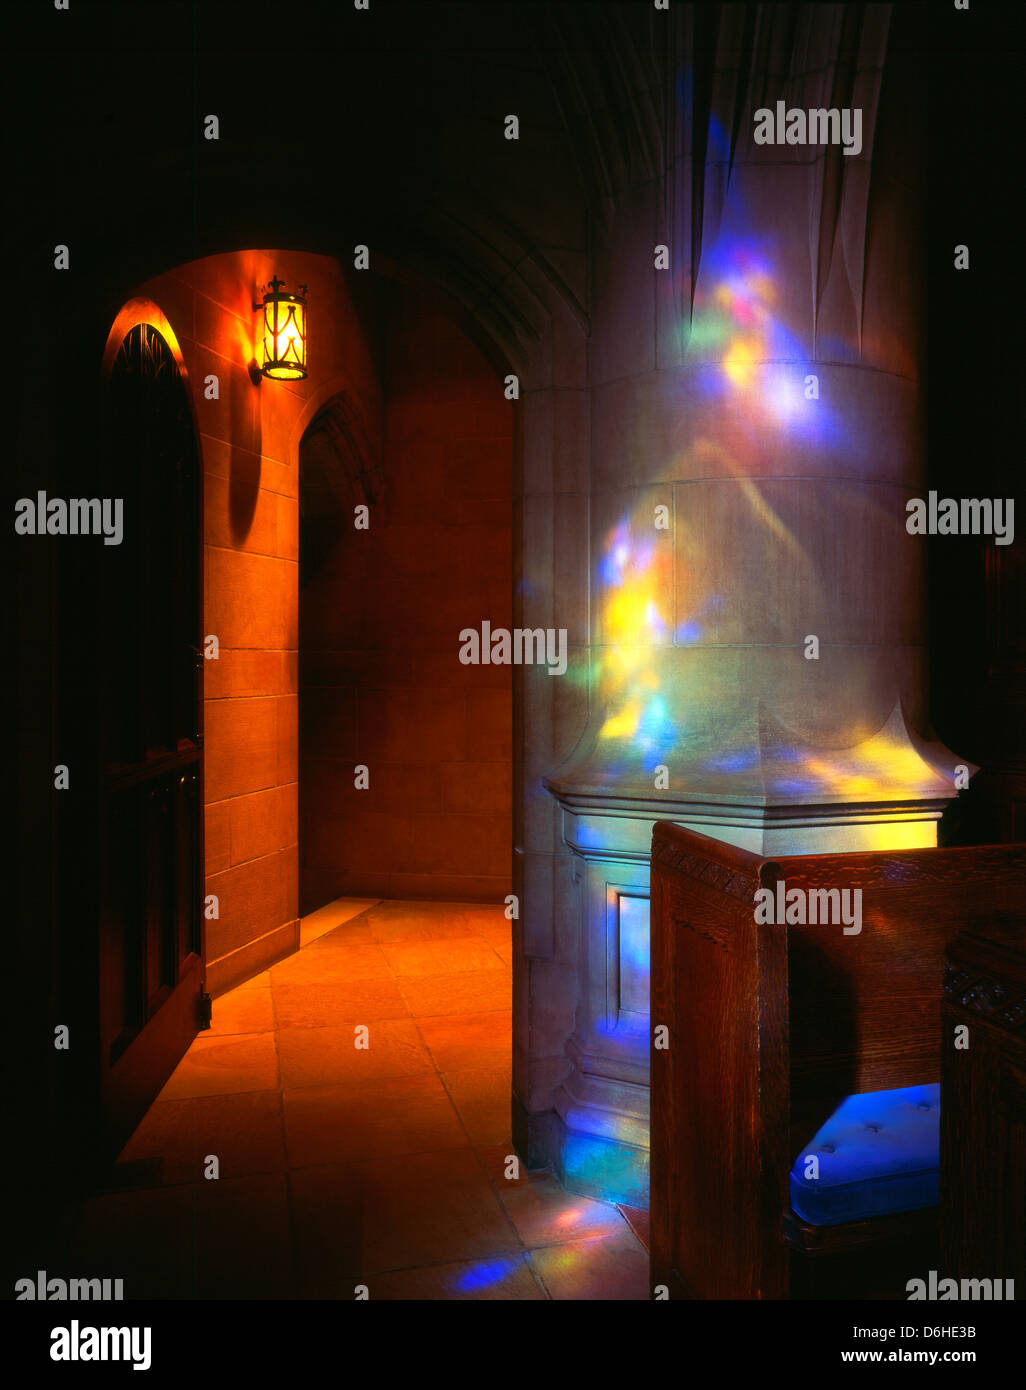 Pezzata dalla luce del sole attraverso le finestre di vetro macchiate proietta pattern colorati, Heinz Memorial Chapel, Università di Pittsburgh Foto Stock